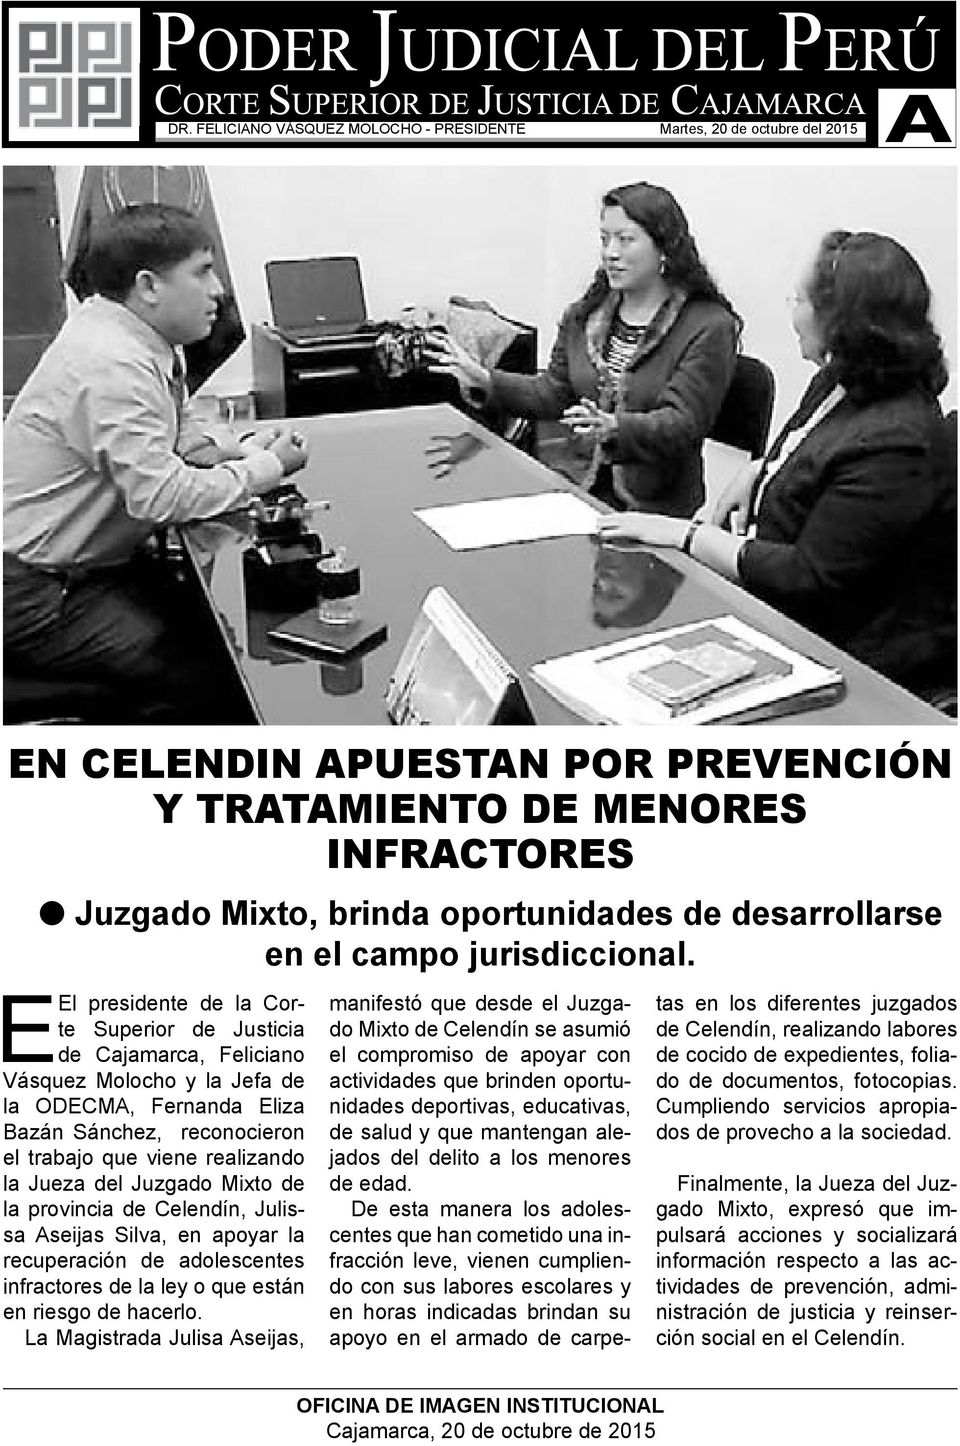 EEl presidente de la Corte Superior de Justicia de Cajamarca, Feliciano Vásquez Molocho y la Jefa de la ODECMA, Fernanda Eliza Bazán Sánchez, reconocieron el trabajo que viene realizando la Jueza del